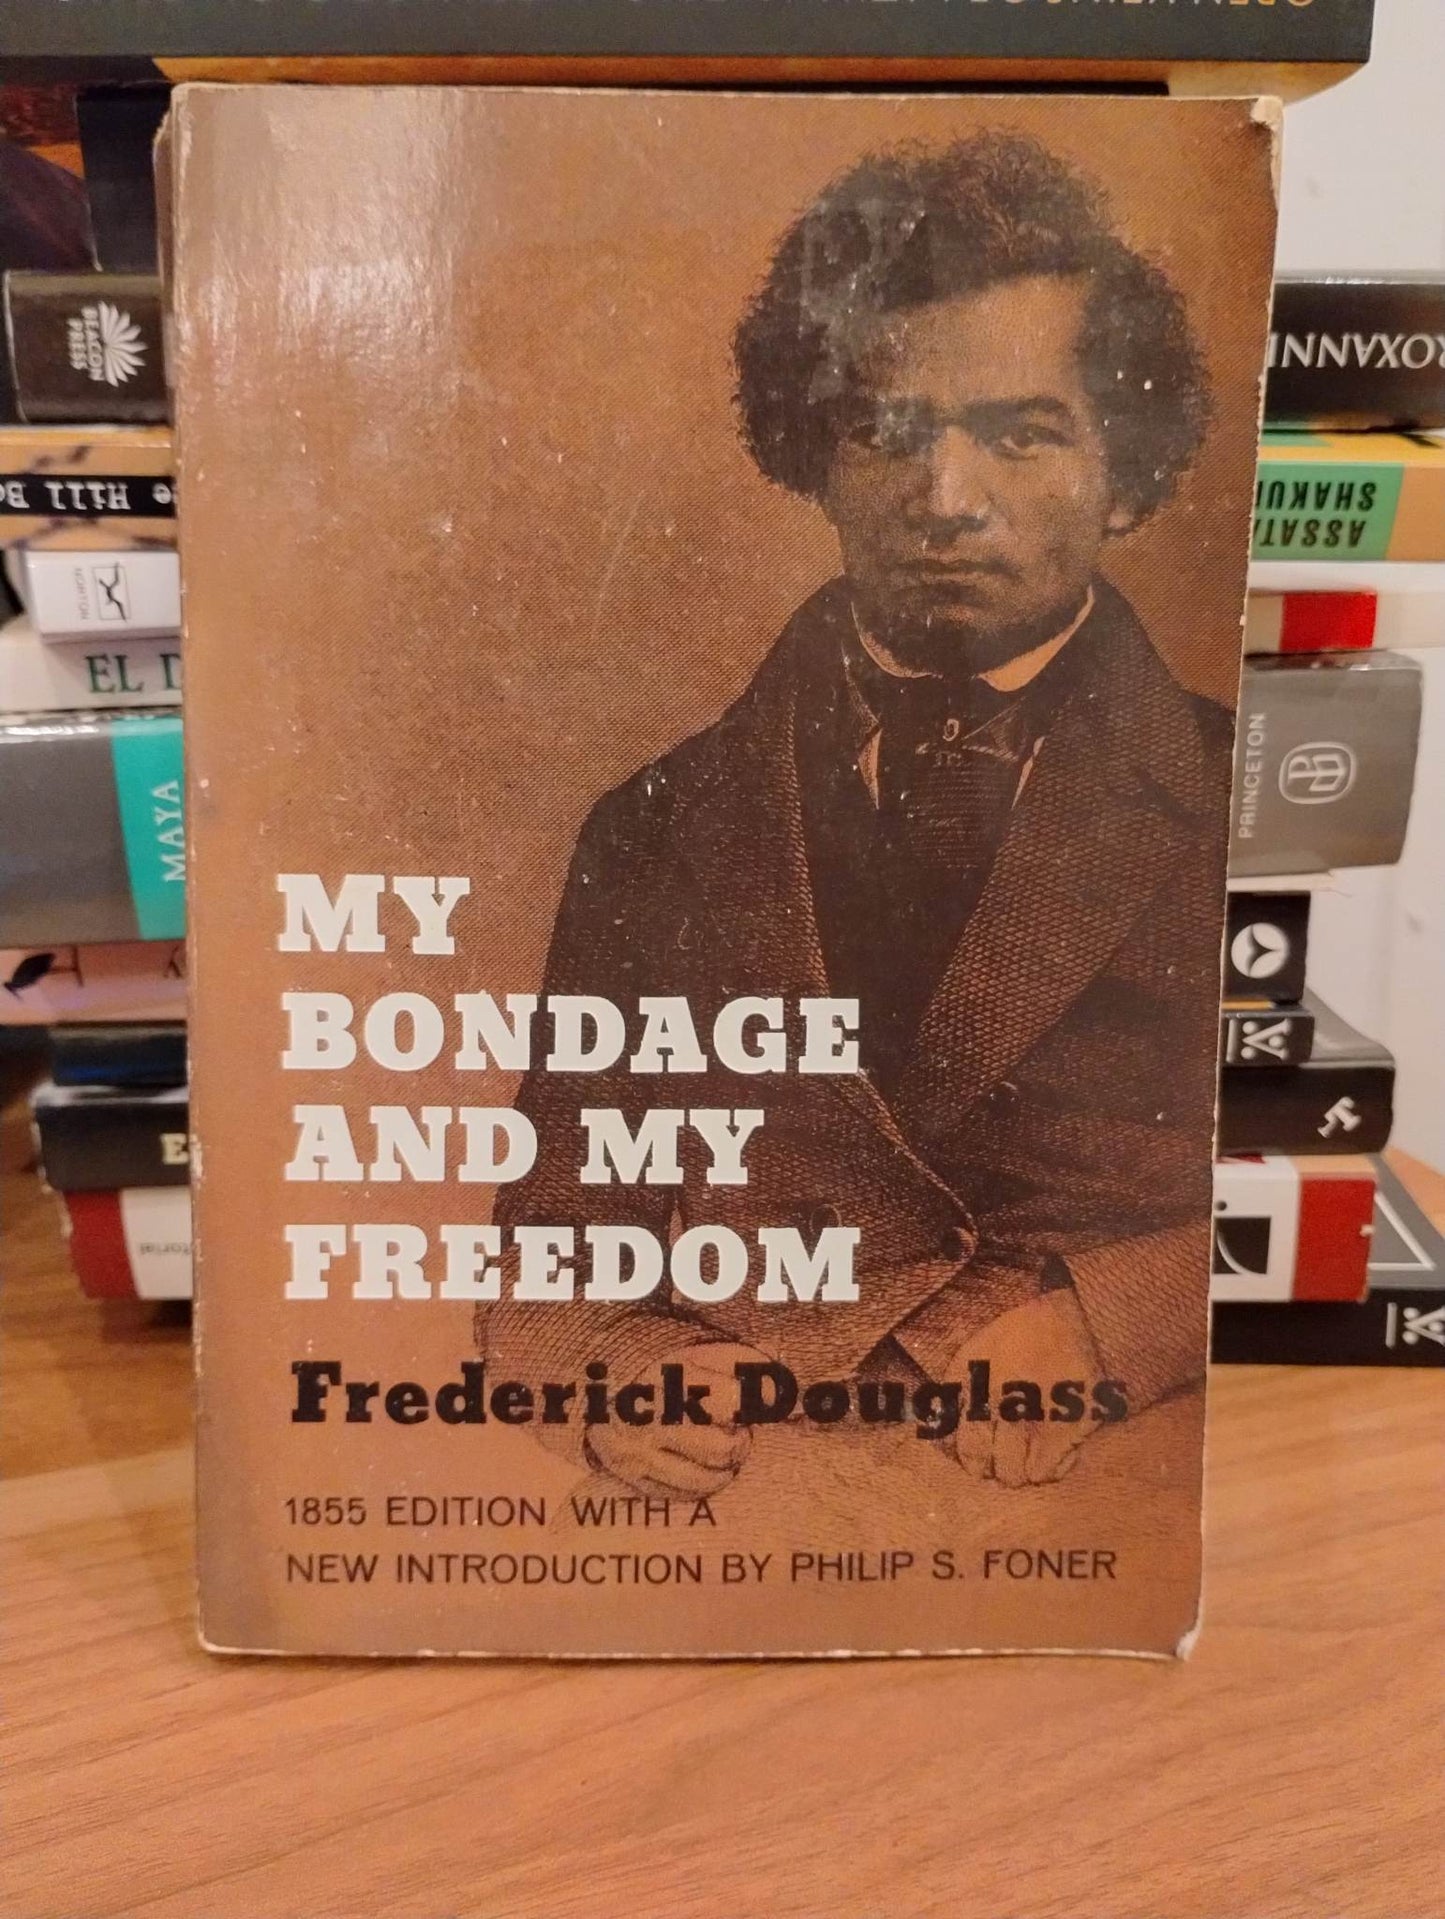 My Bondage & My Freedom by Frederick Douglass